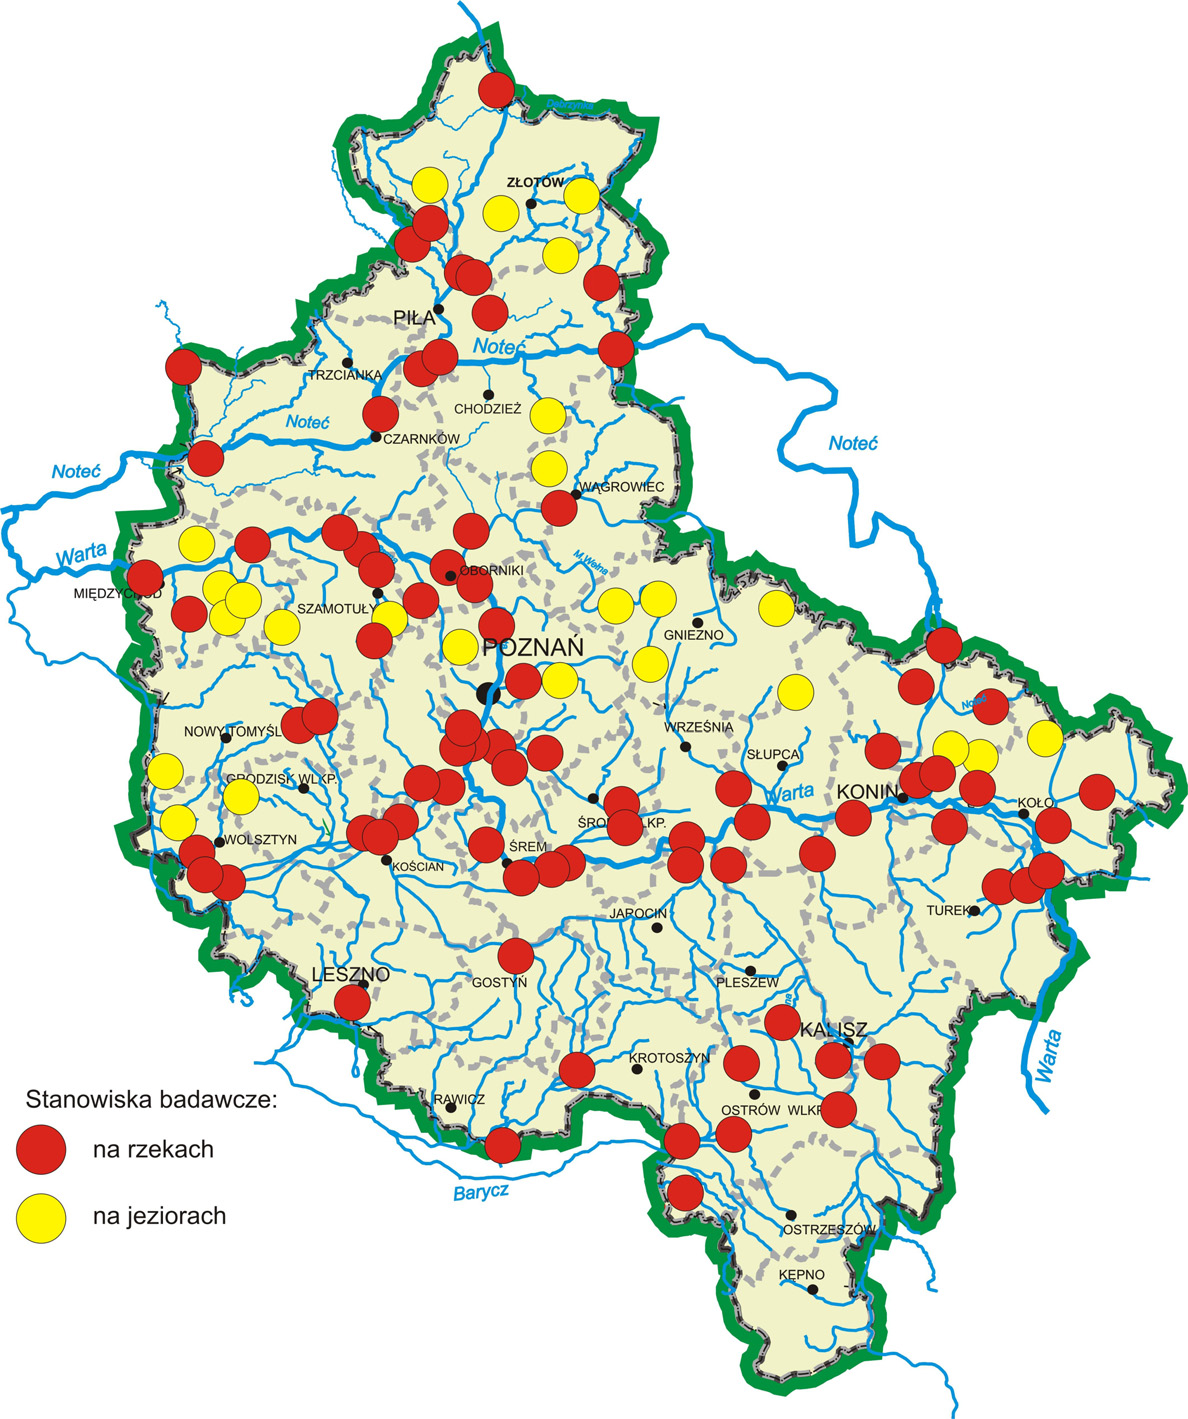 Pietruczuk K., Szoszkiewicz K., 2009. Ocena stanu ekologicznego rzek i jezior w Wielkopolsce na podstawie makrofitów 3 Rys. 1.